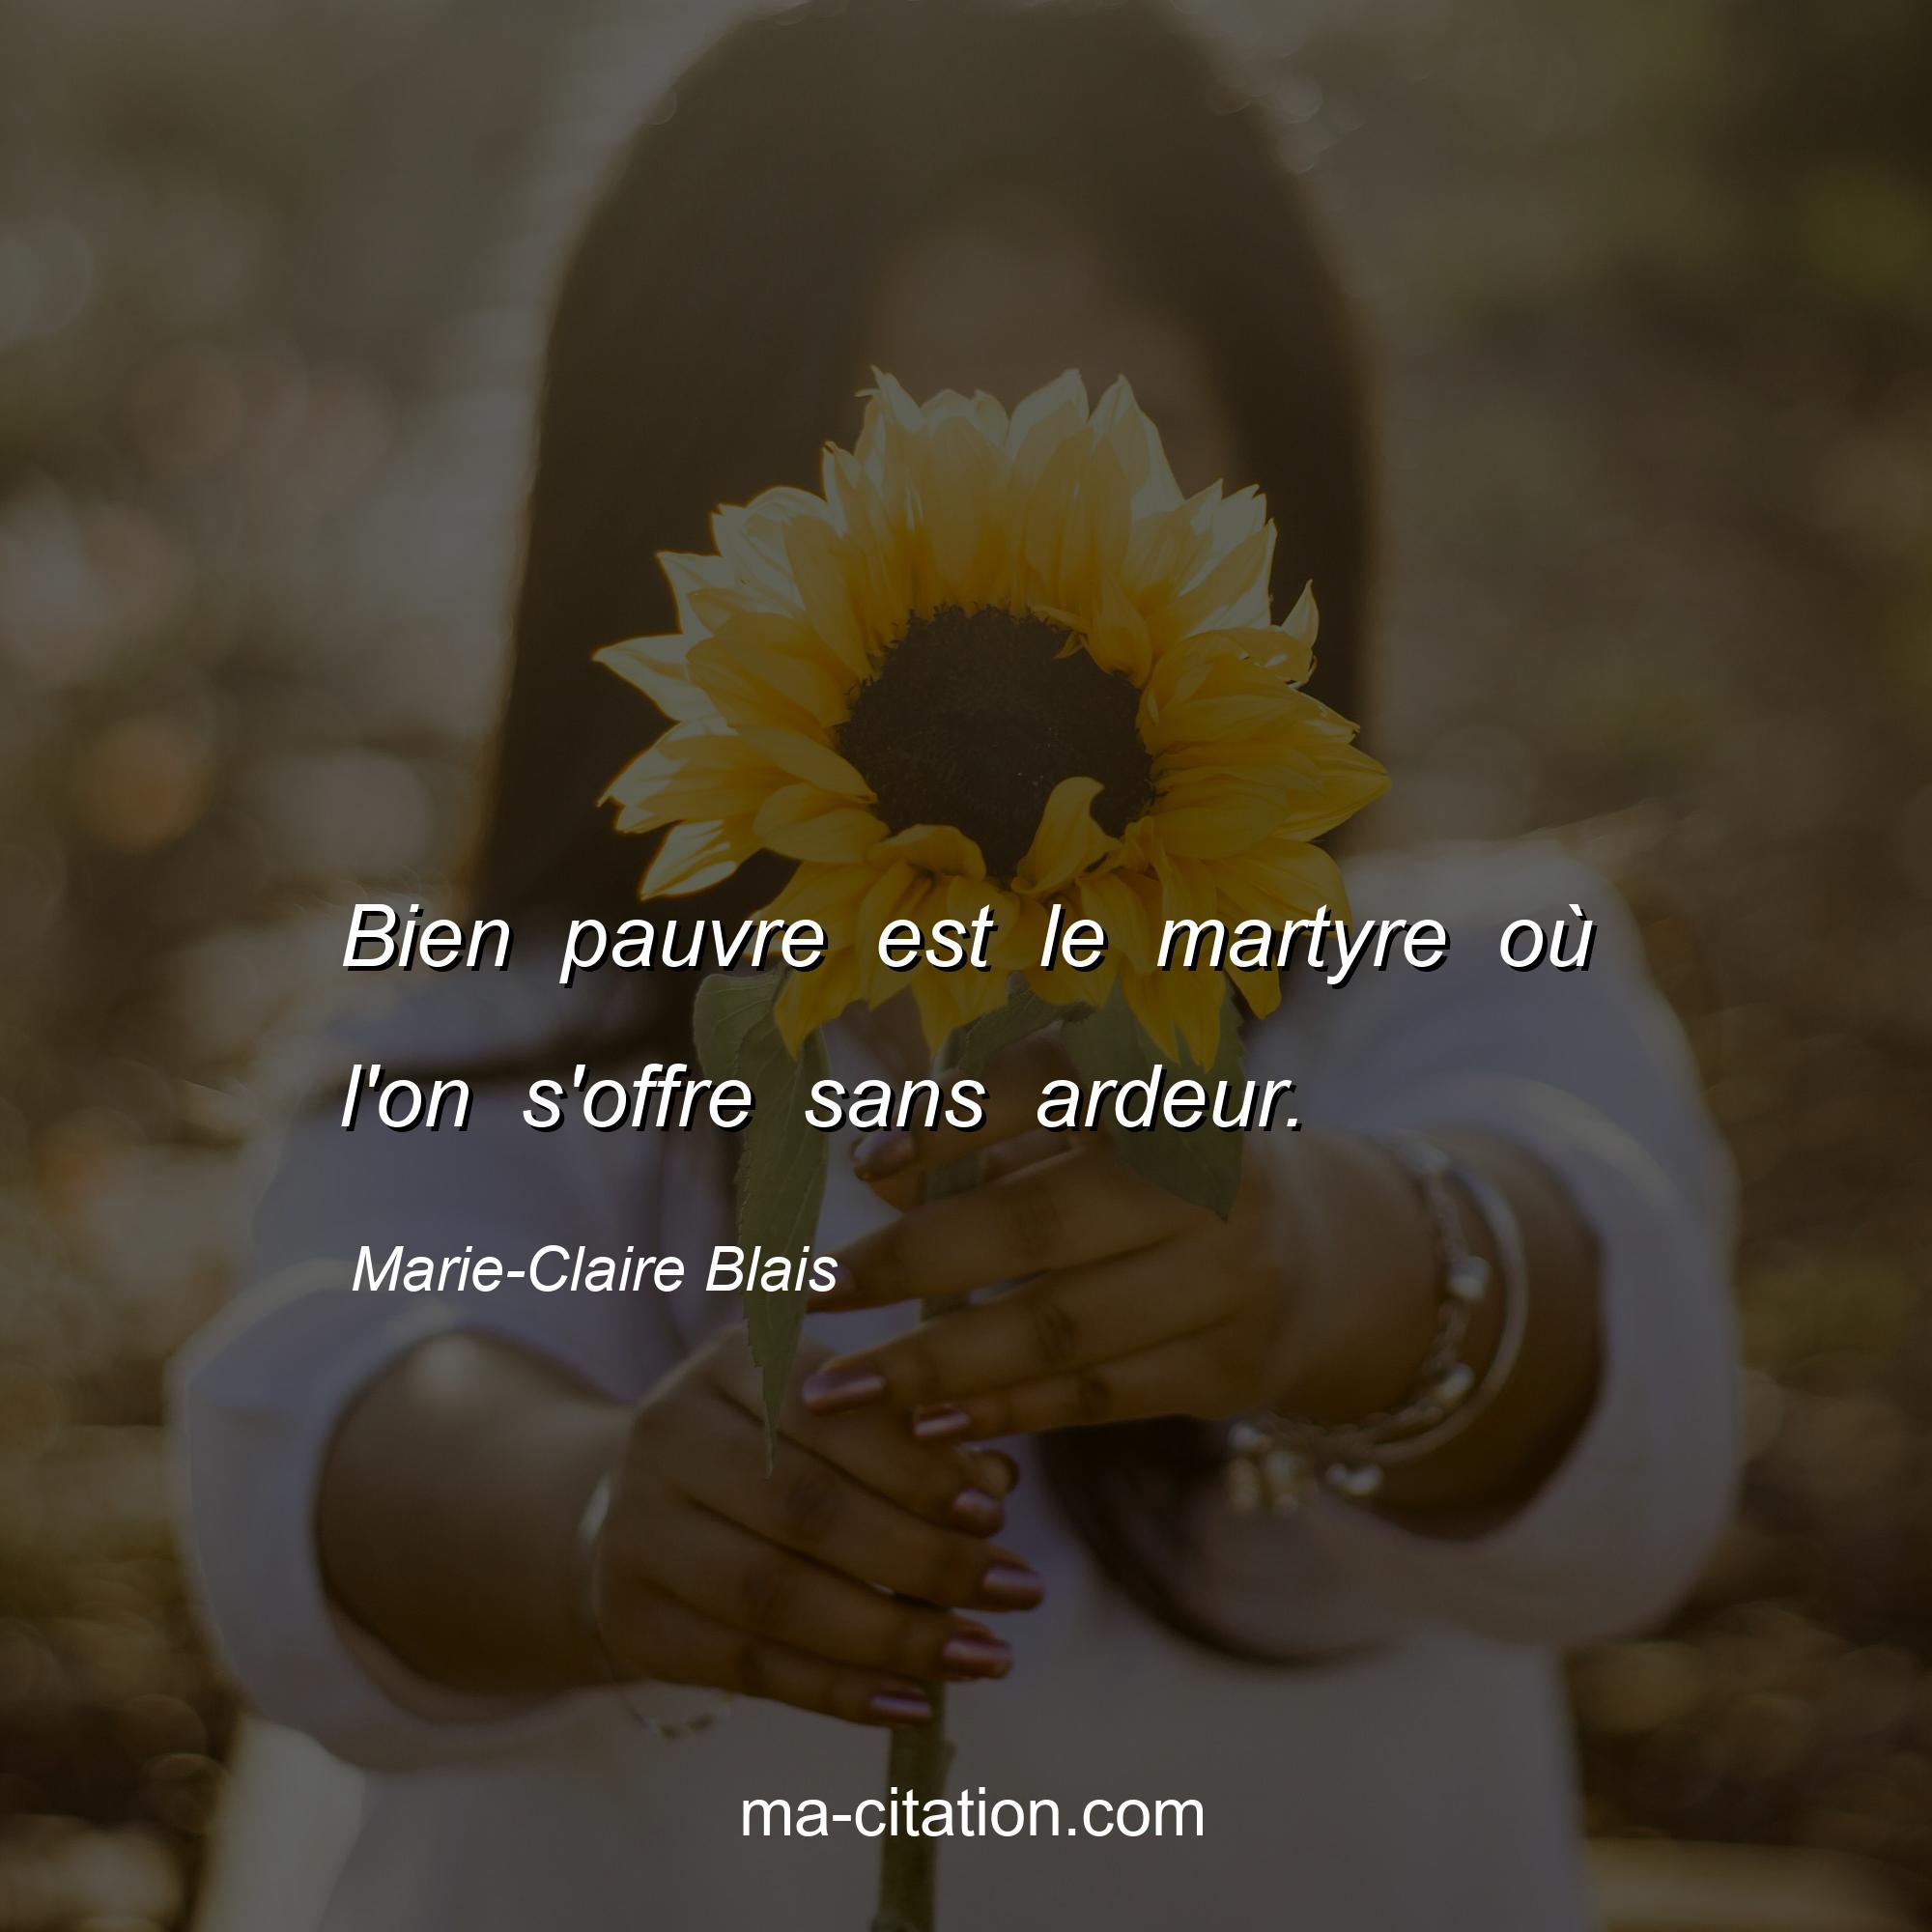 Marie-Claire Blais : Bien pauvre est le martyre où l'on s'offre sans ardeur.